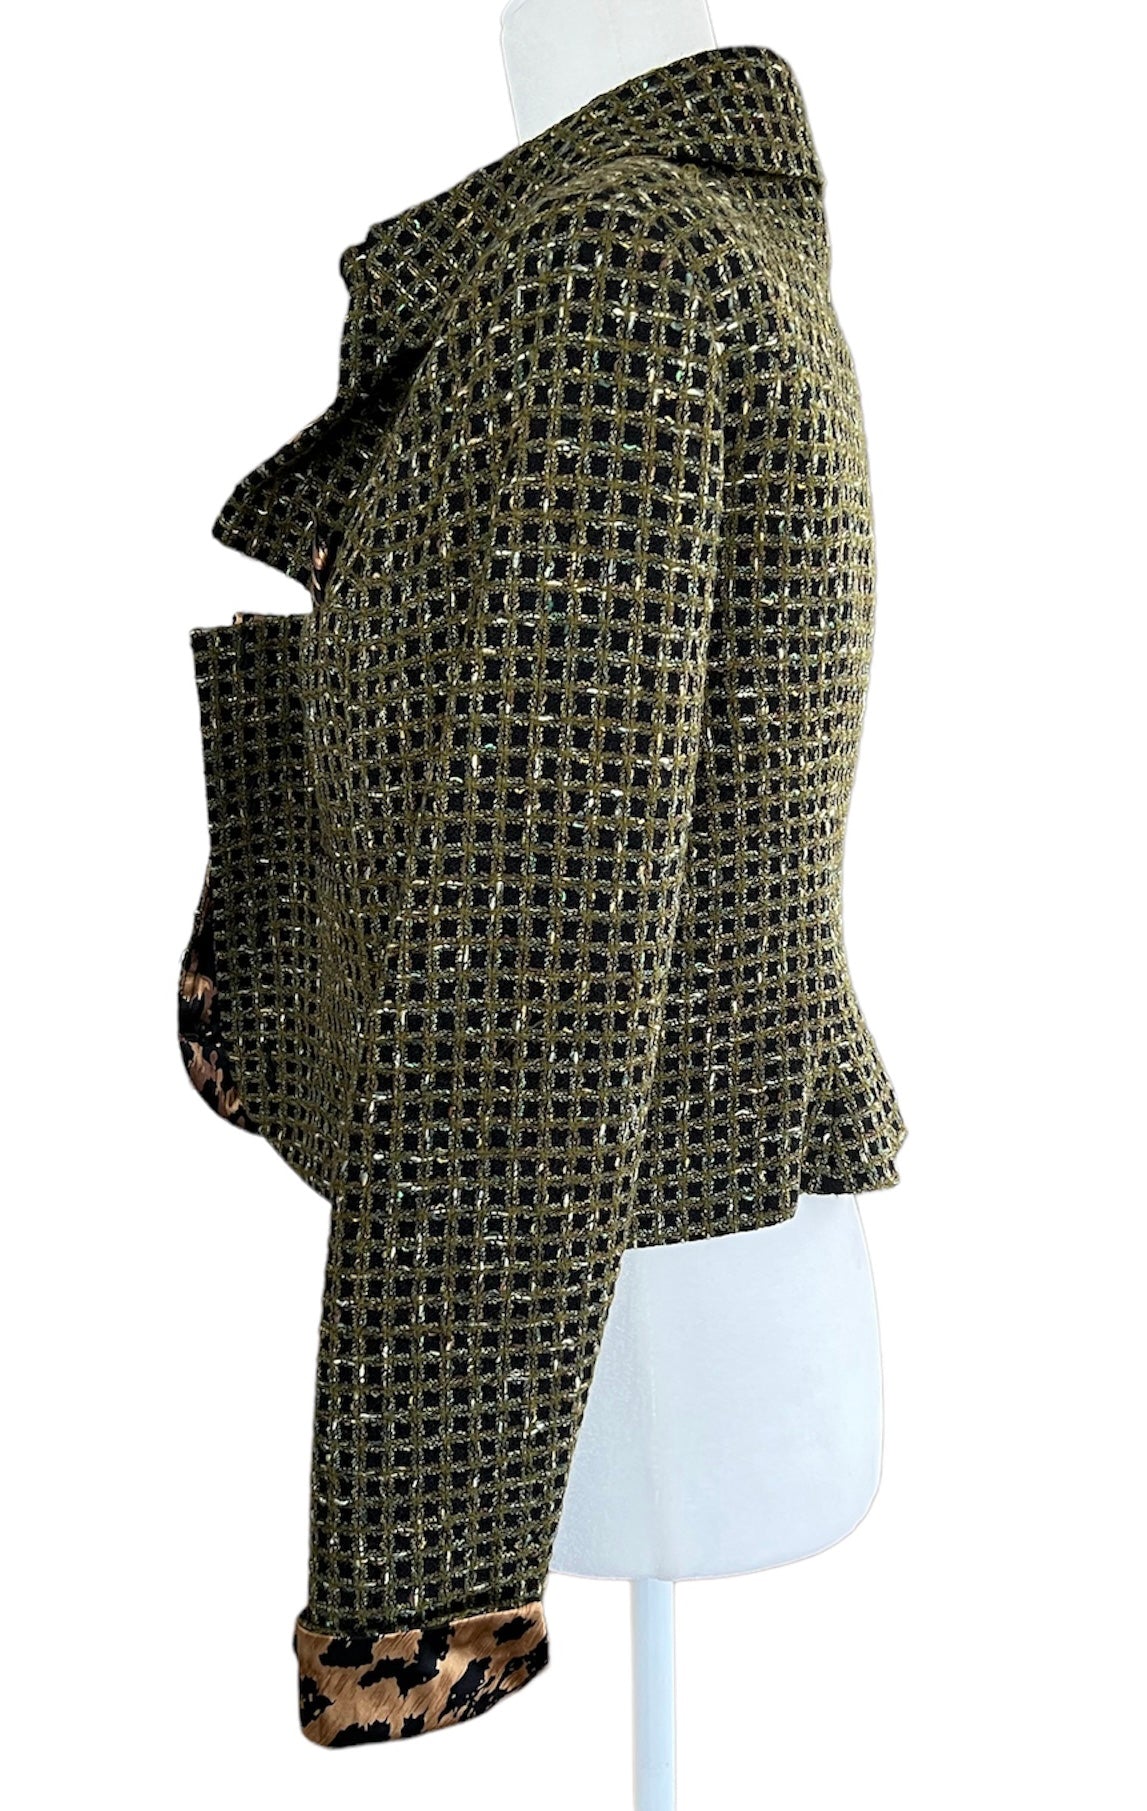 Carlisle Olive Tweed Wool Blend Jacket, 12